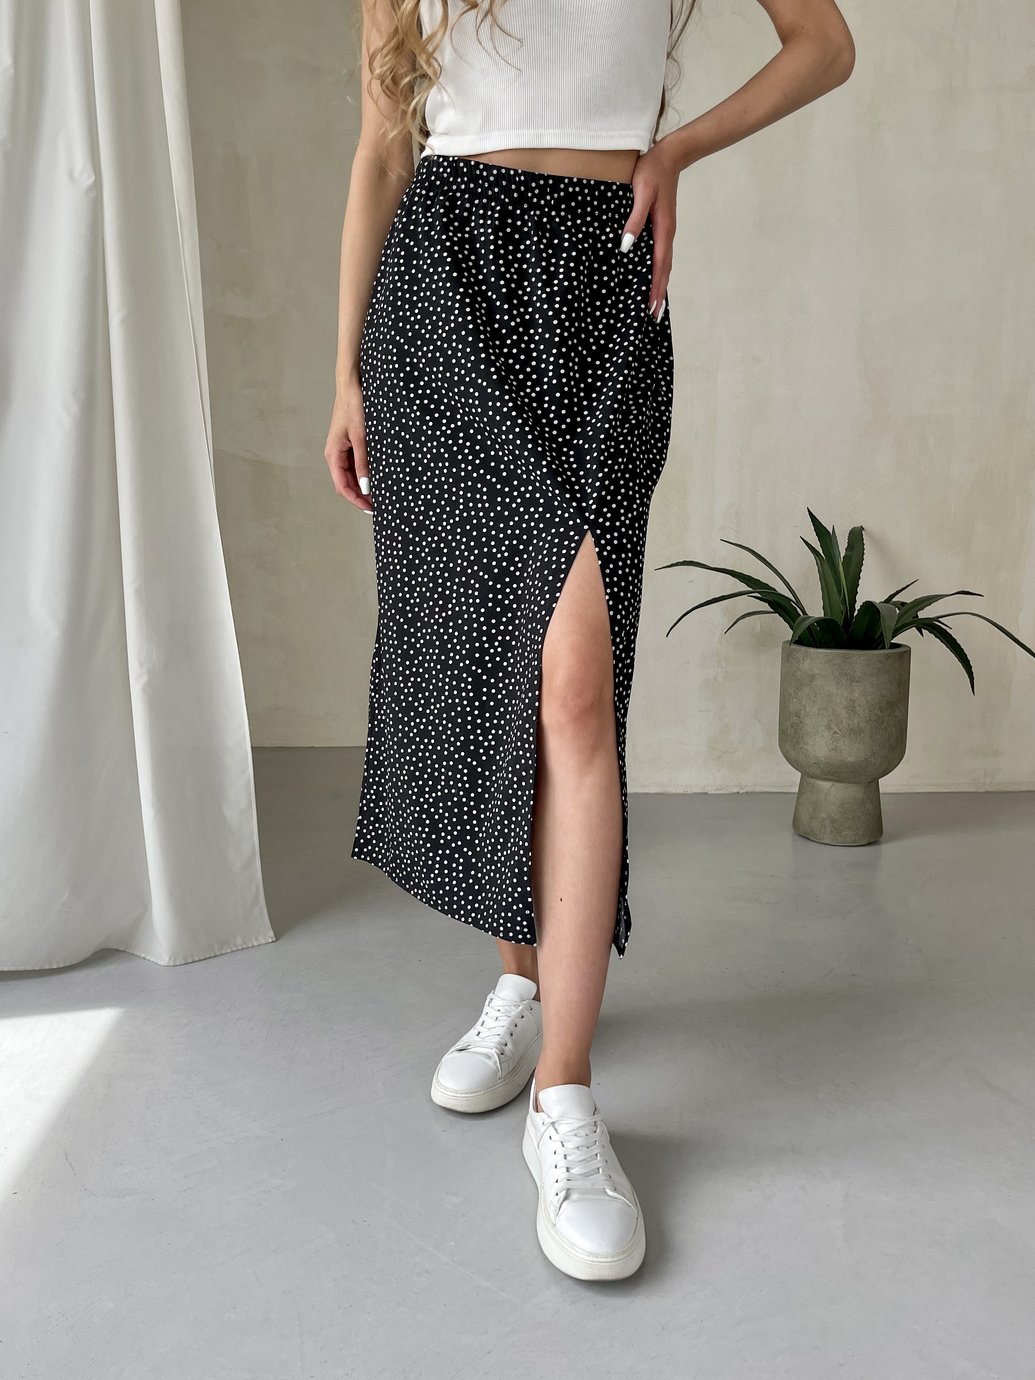 Купити Довга жіноча спідниця нижче коліна з розміром у горохMerlini Парма 400000101, розмір 42-44 (S-M) в інтернет-магазині